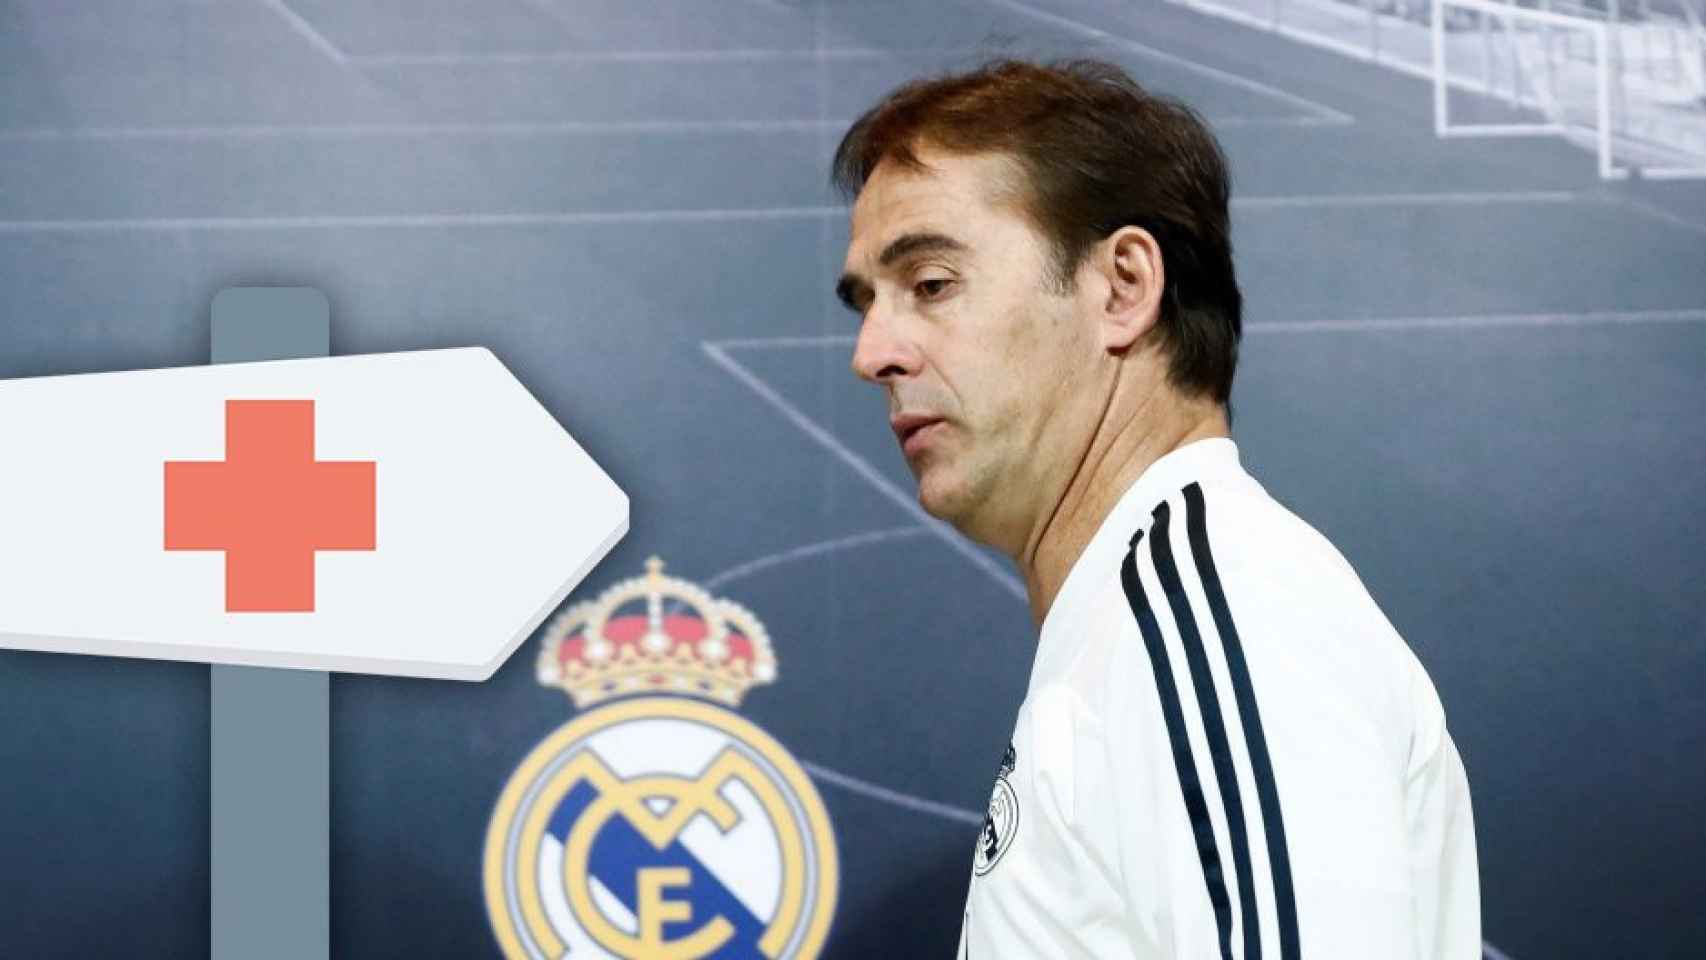 Julen Lopetegui en su etapa como técnico del Real Madrid y un letrero que señala hacia la enfermería / FOTOMONTAJE DE CULEMANÍA